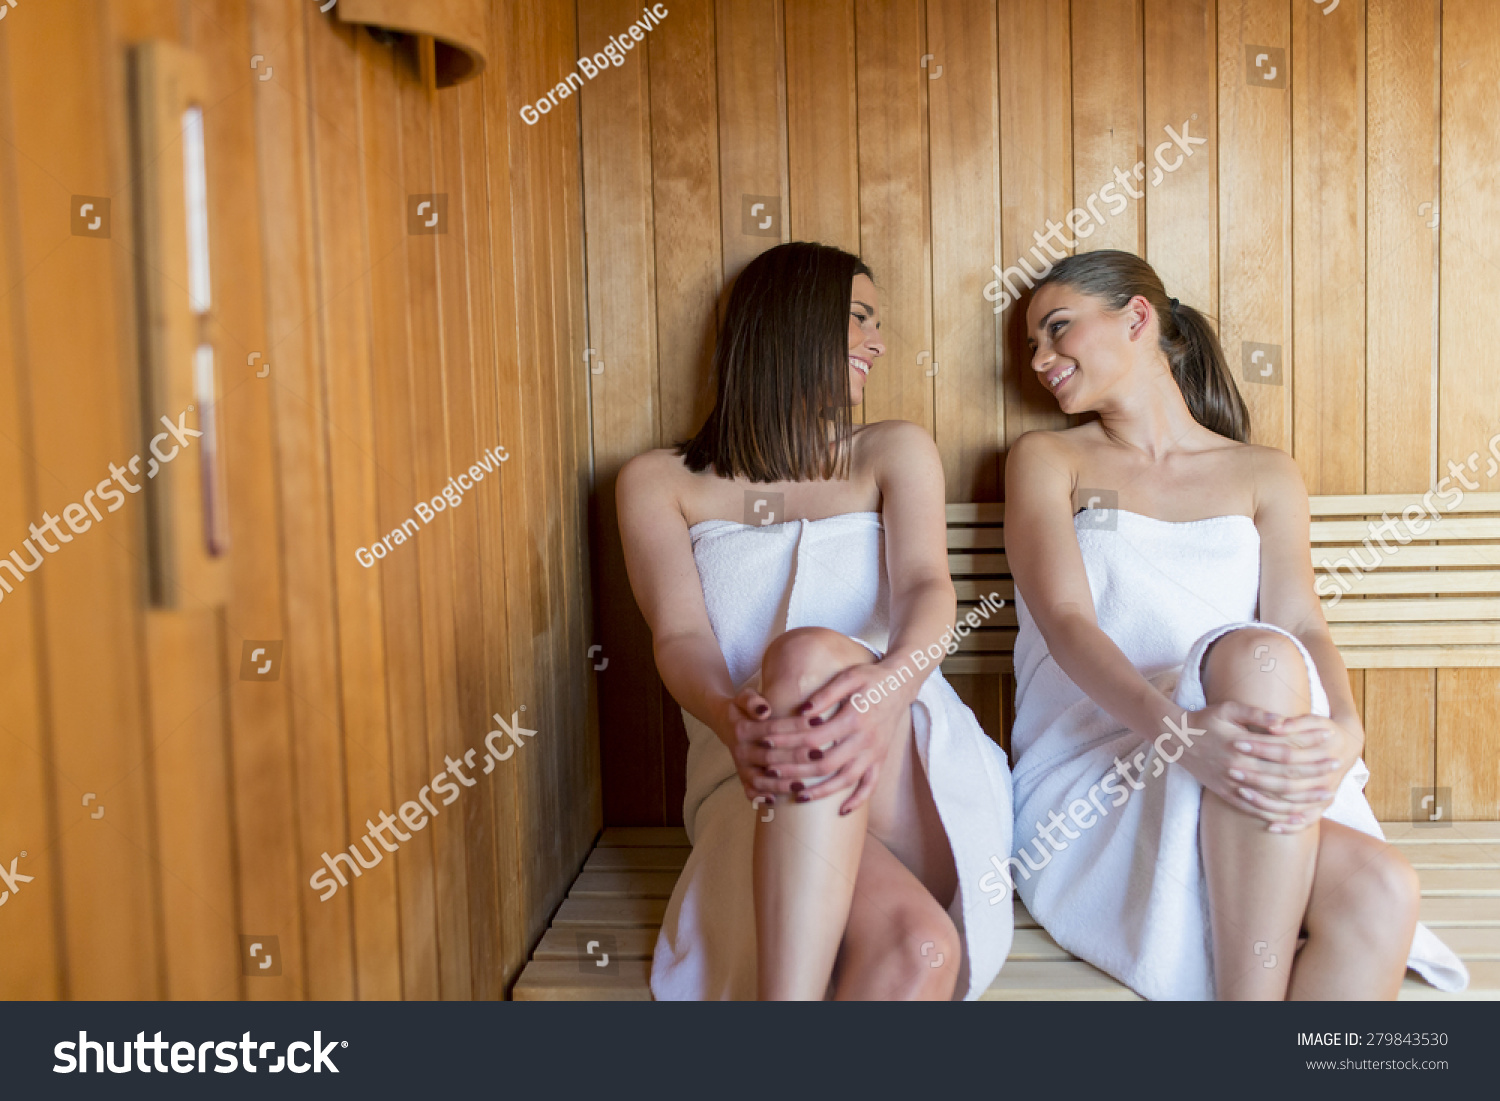 мы с сестрой моемся в бане голыми фото 60